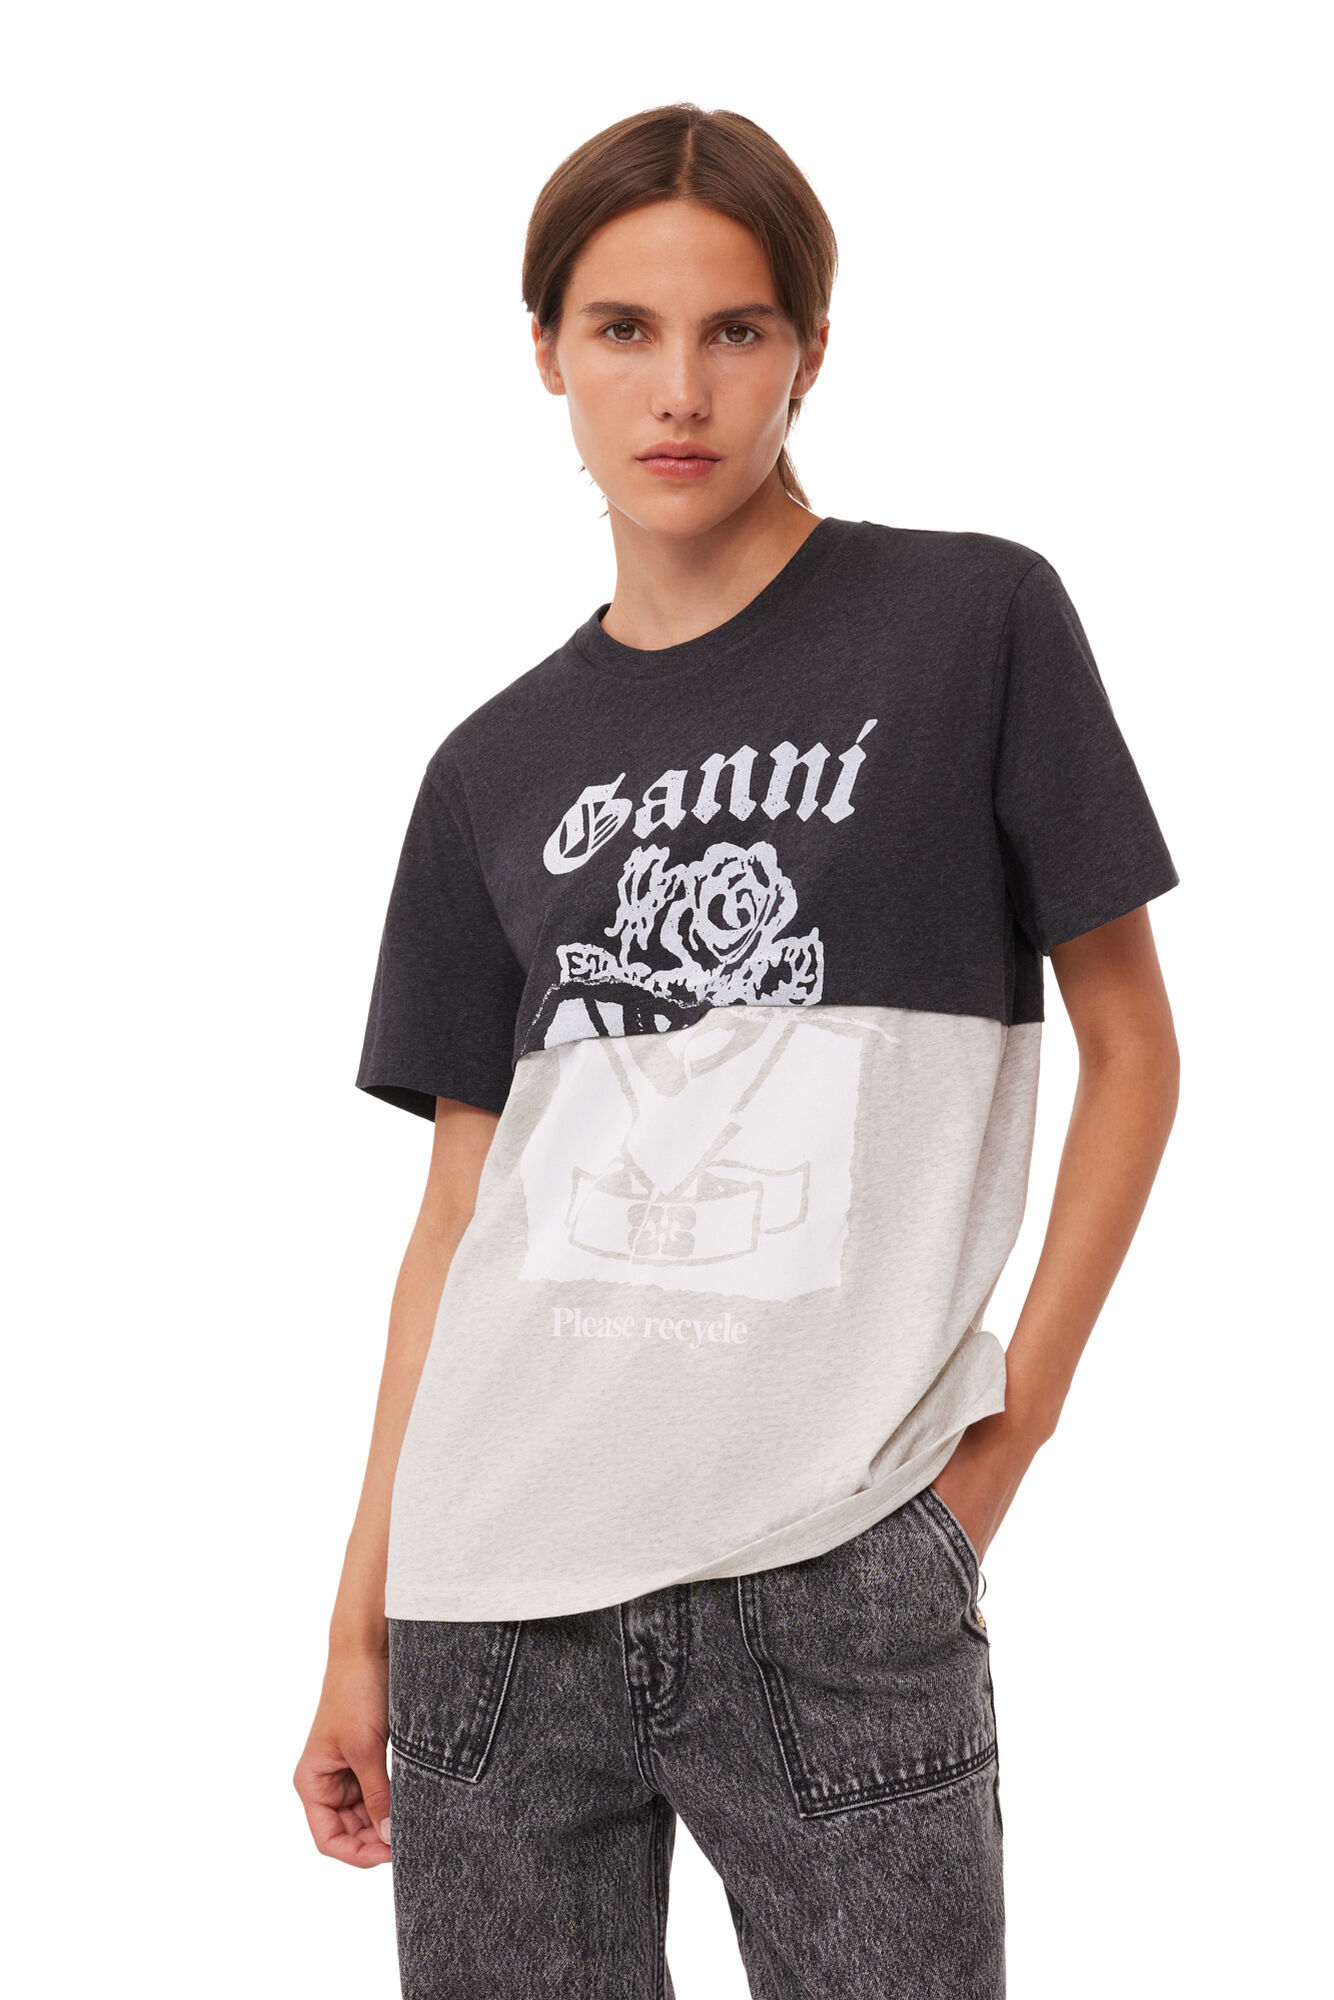 Ganni Re-cut Jersey T-shirt